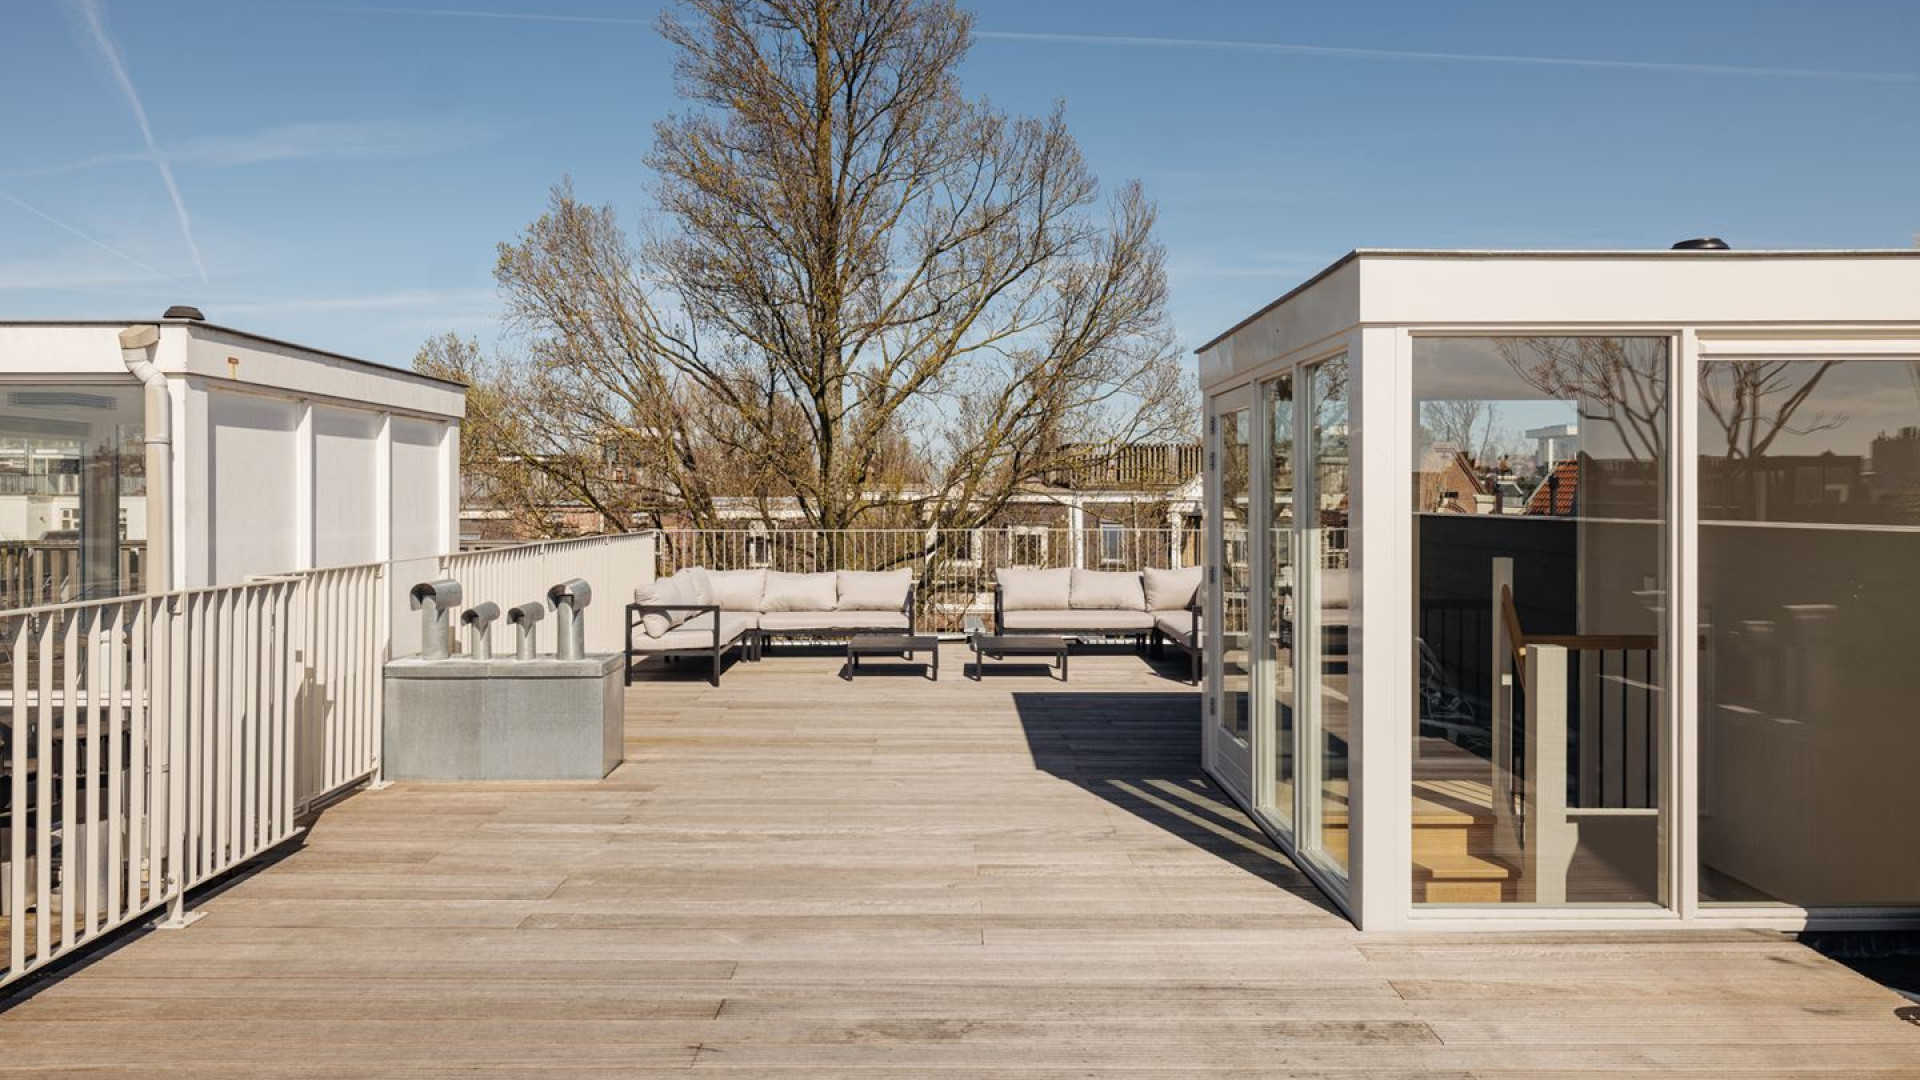 Johnny de Mol koopt dit prachtige penthouse in Amsterdam vlakbij ex geliefde Chantal Janzen. Zie foto's 12